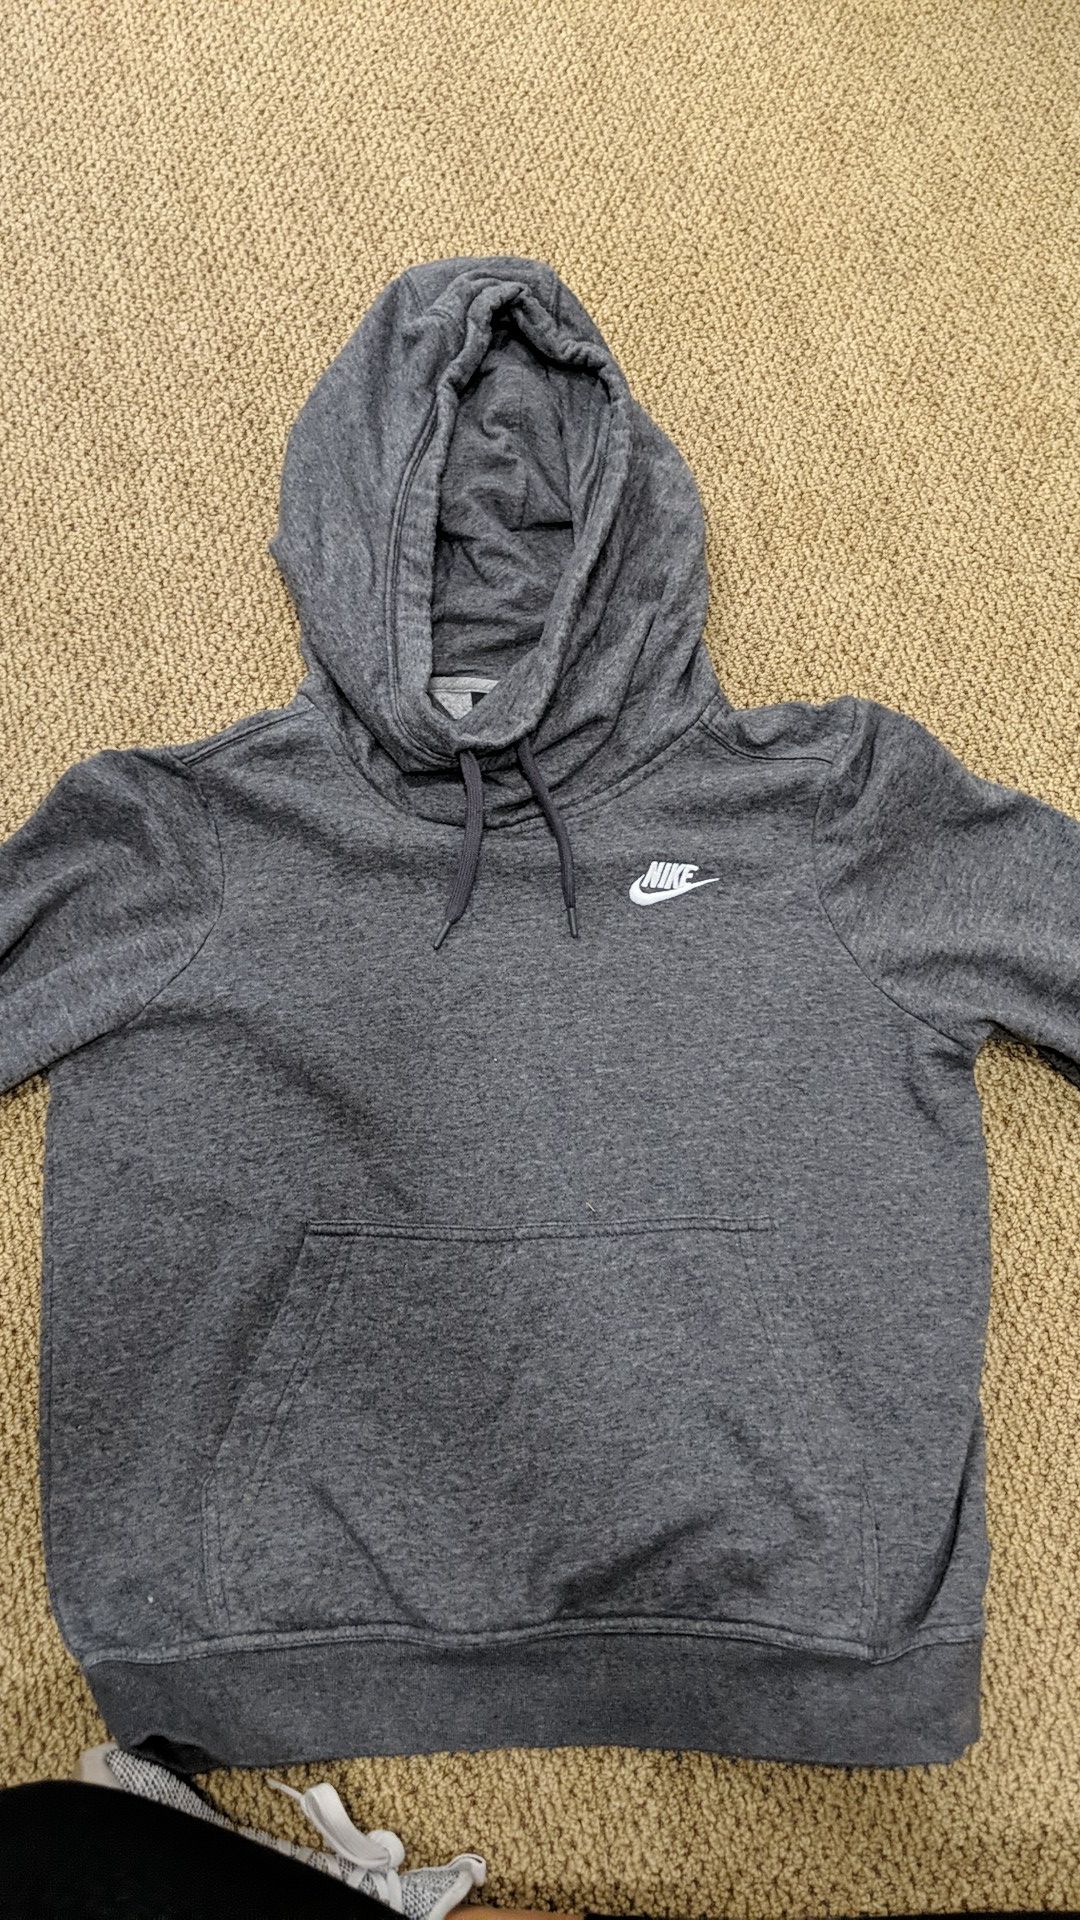 Nike sweatshirt with hood, grey